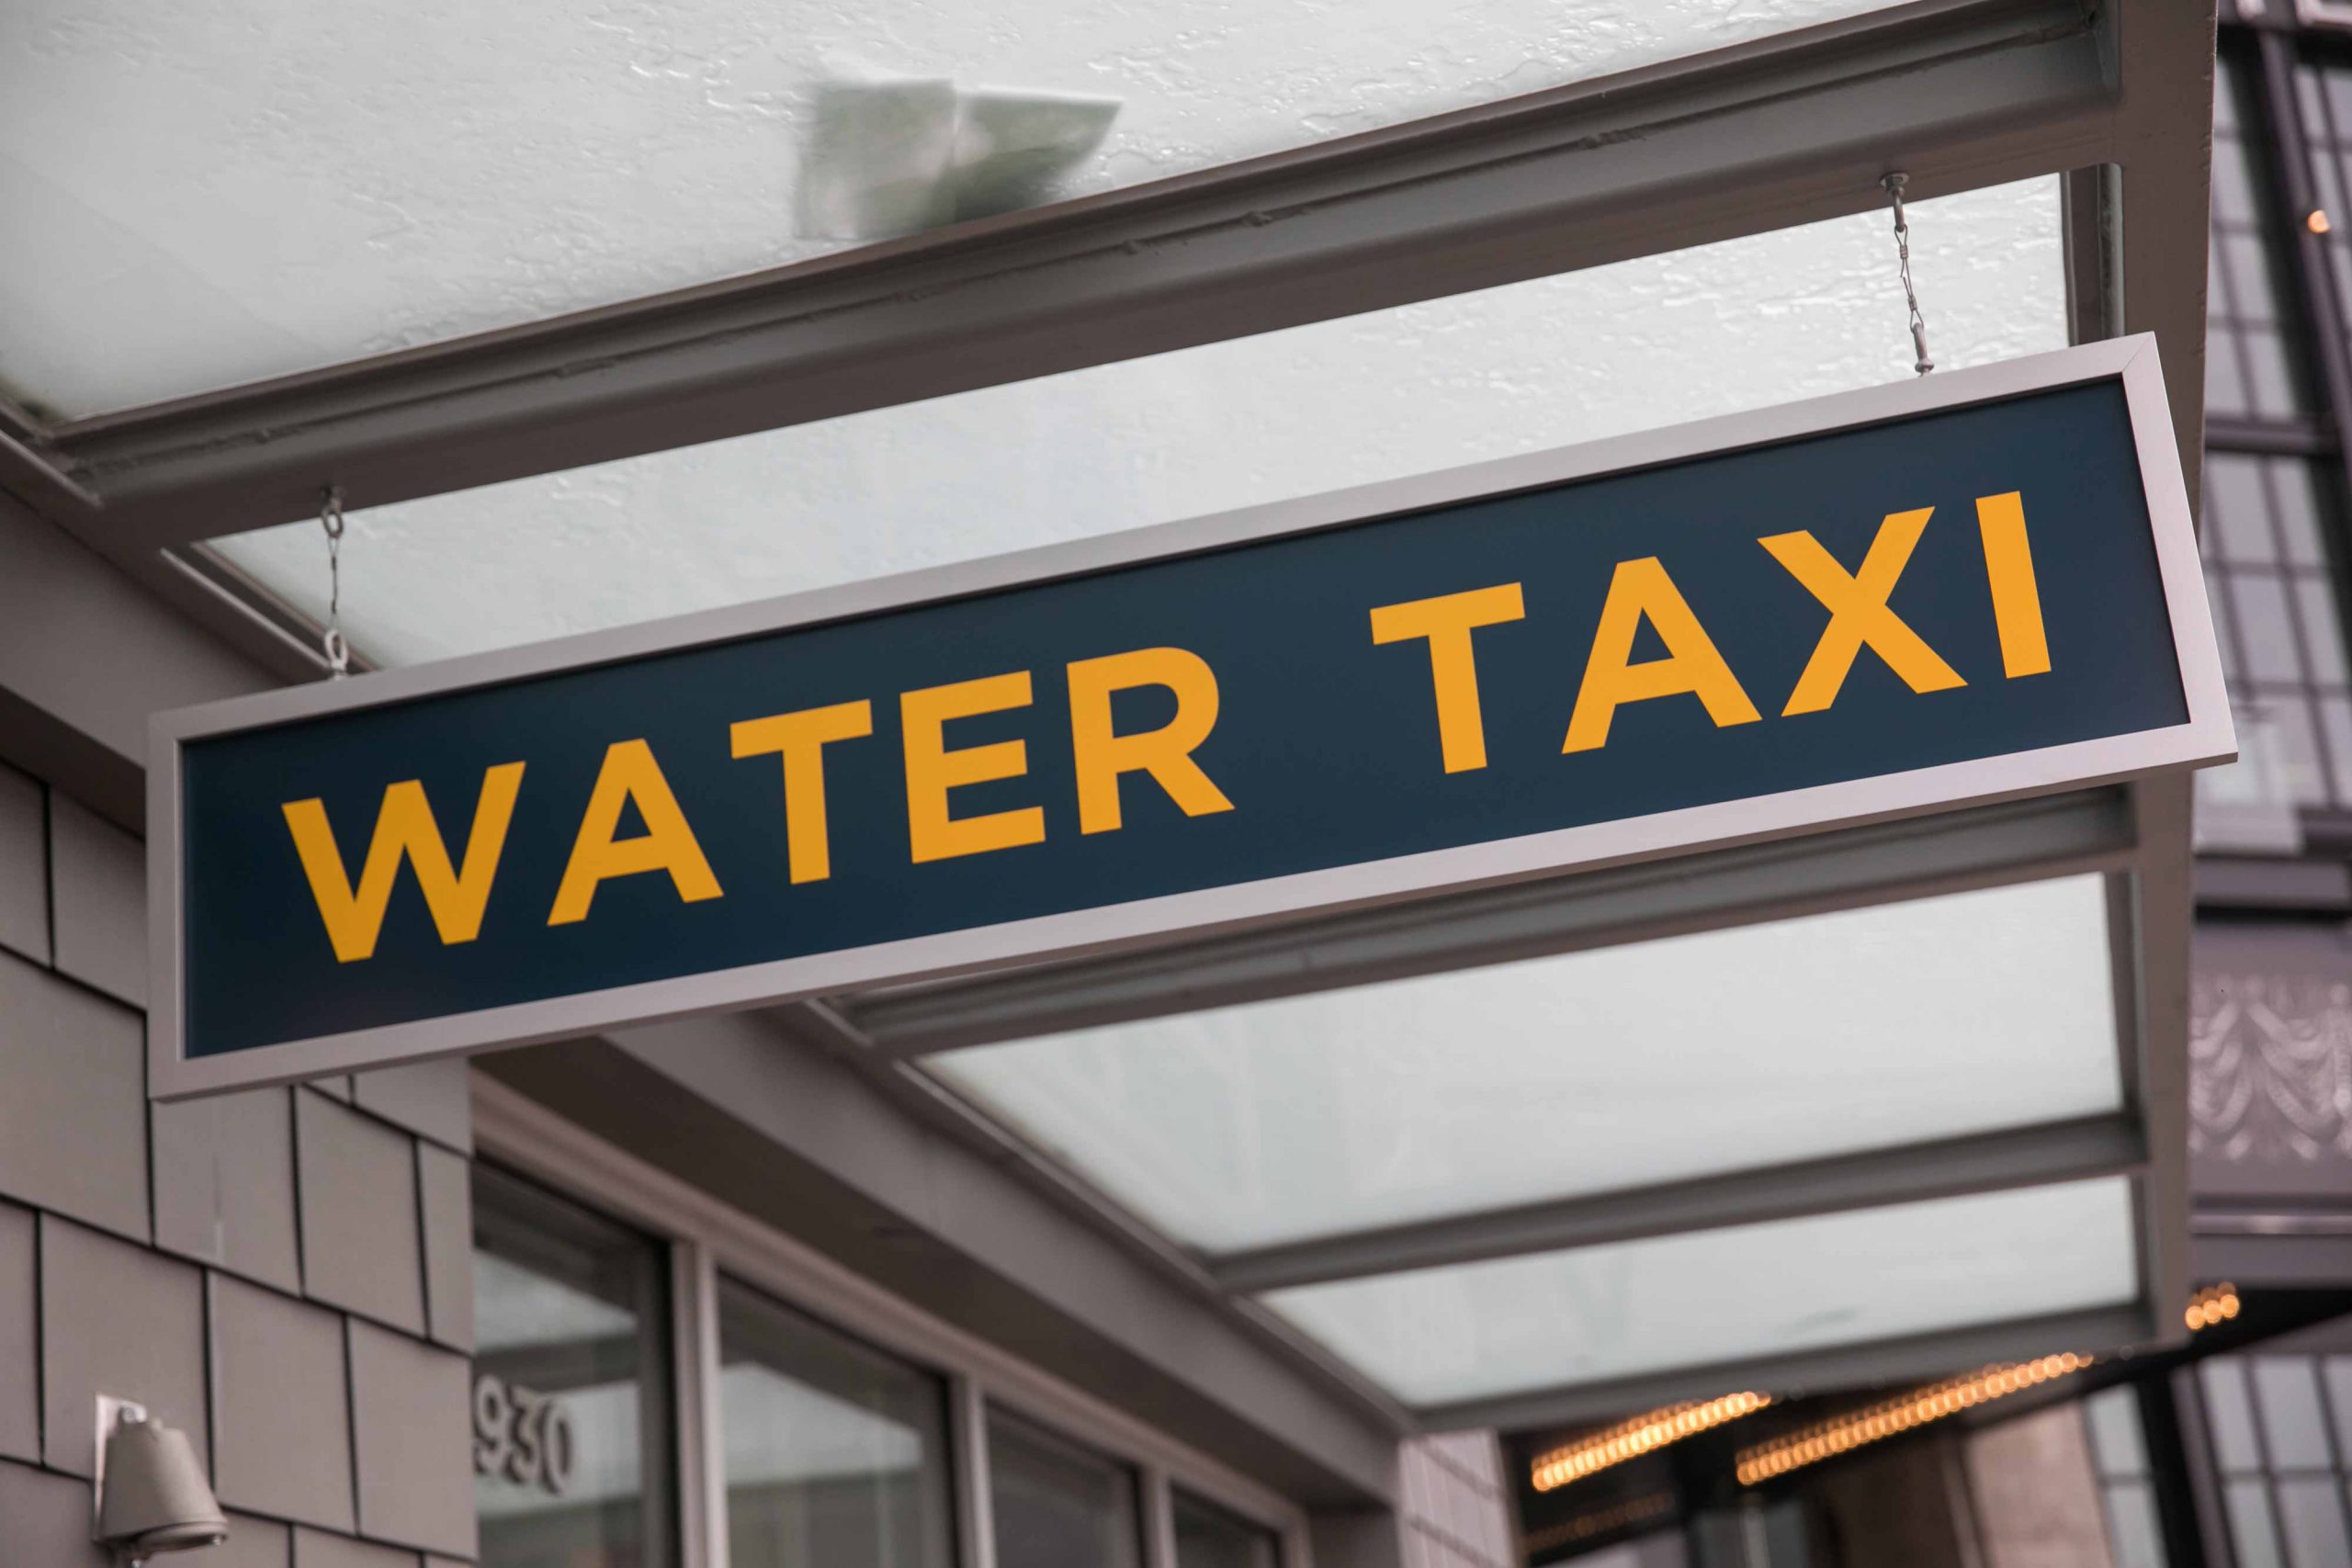 שלט מונית מים בוושינגטון הבירה